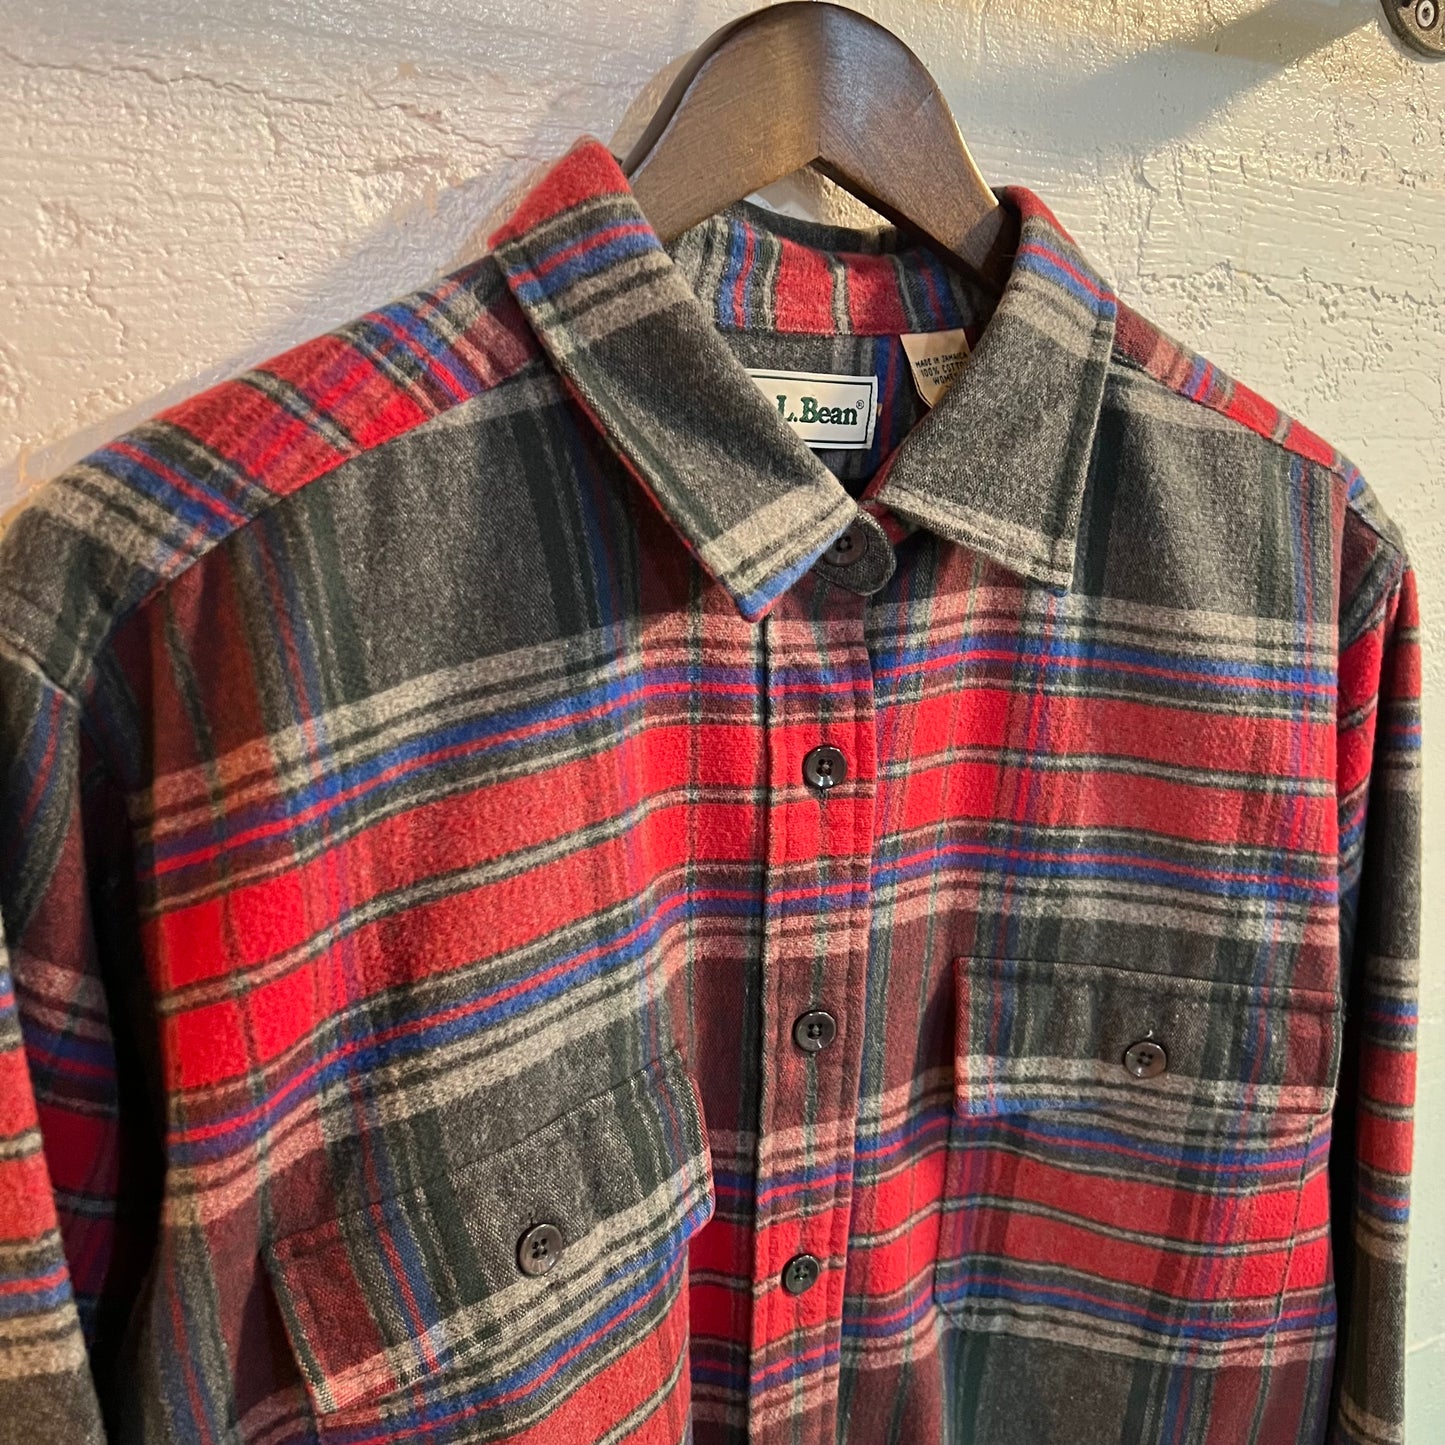 Vintage 90's L.L. Bean Plaid Flannel Shirt - Size XL - Red/Blue/Gray